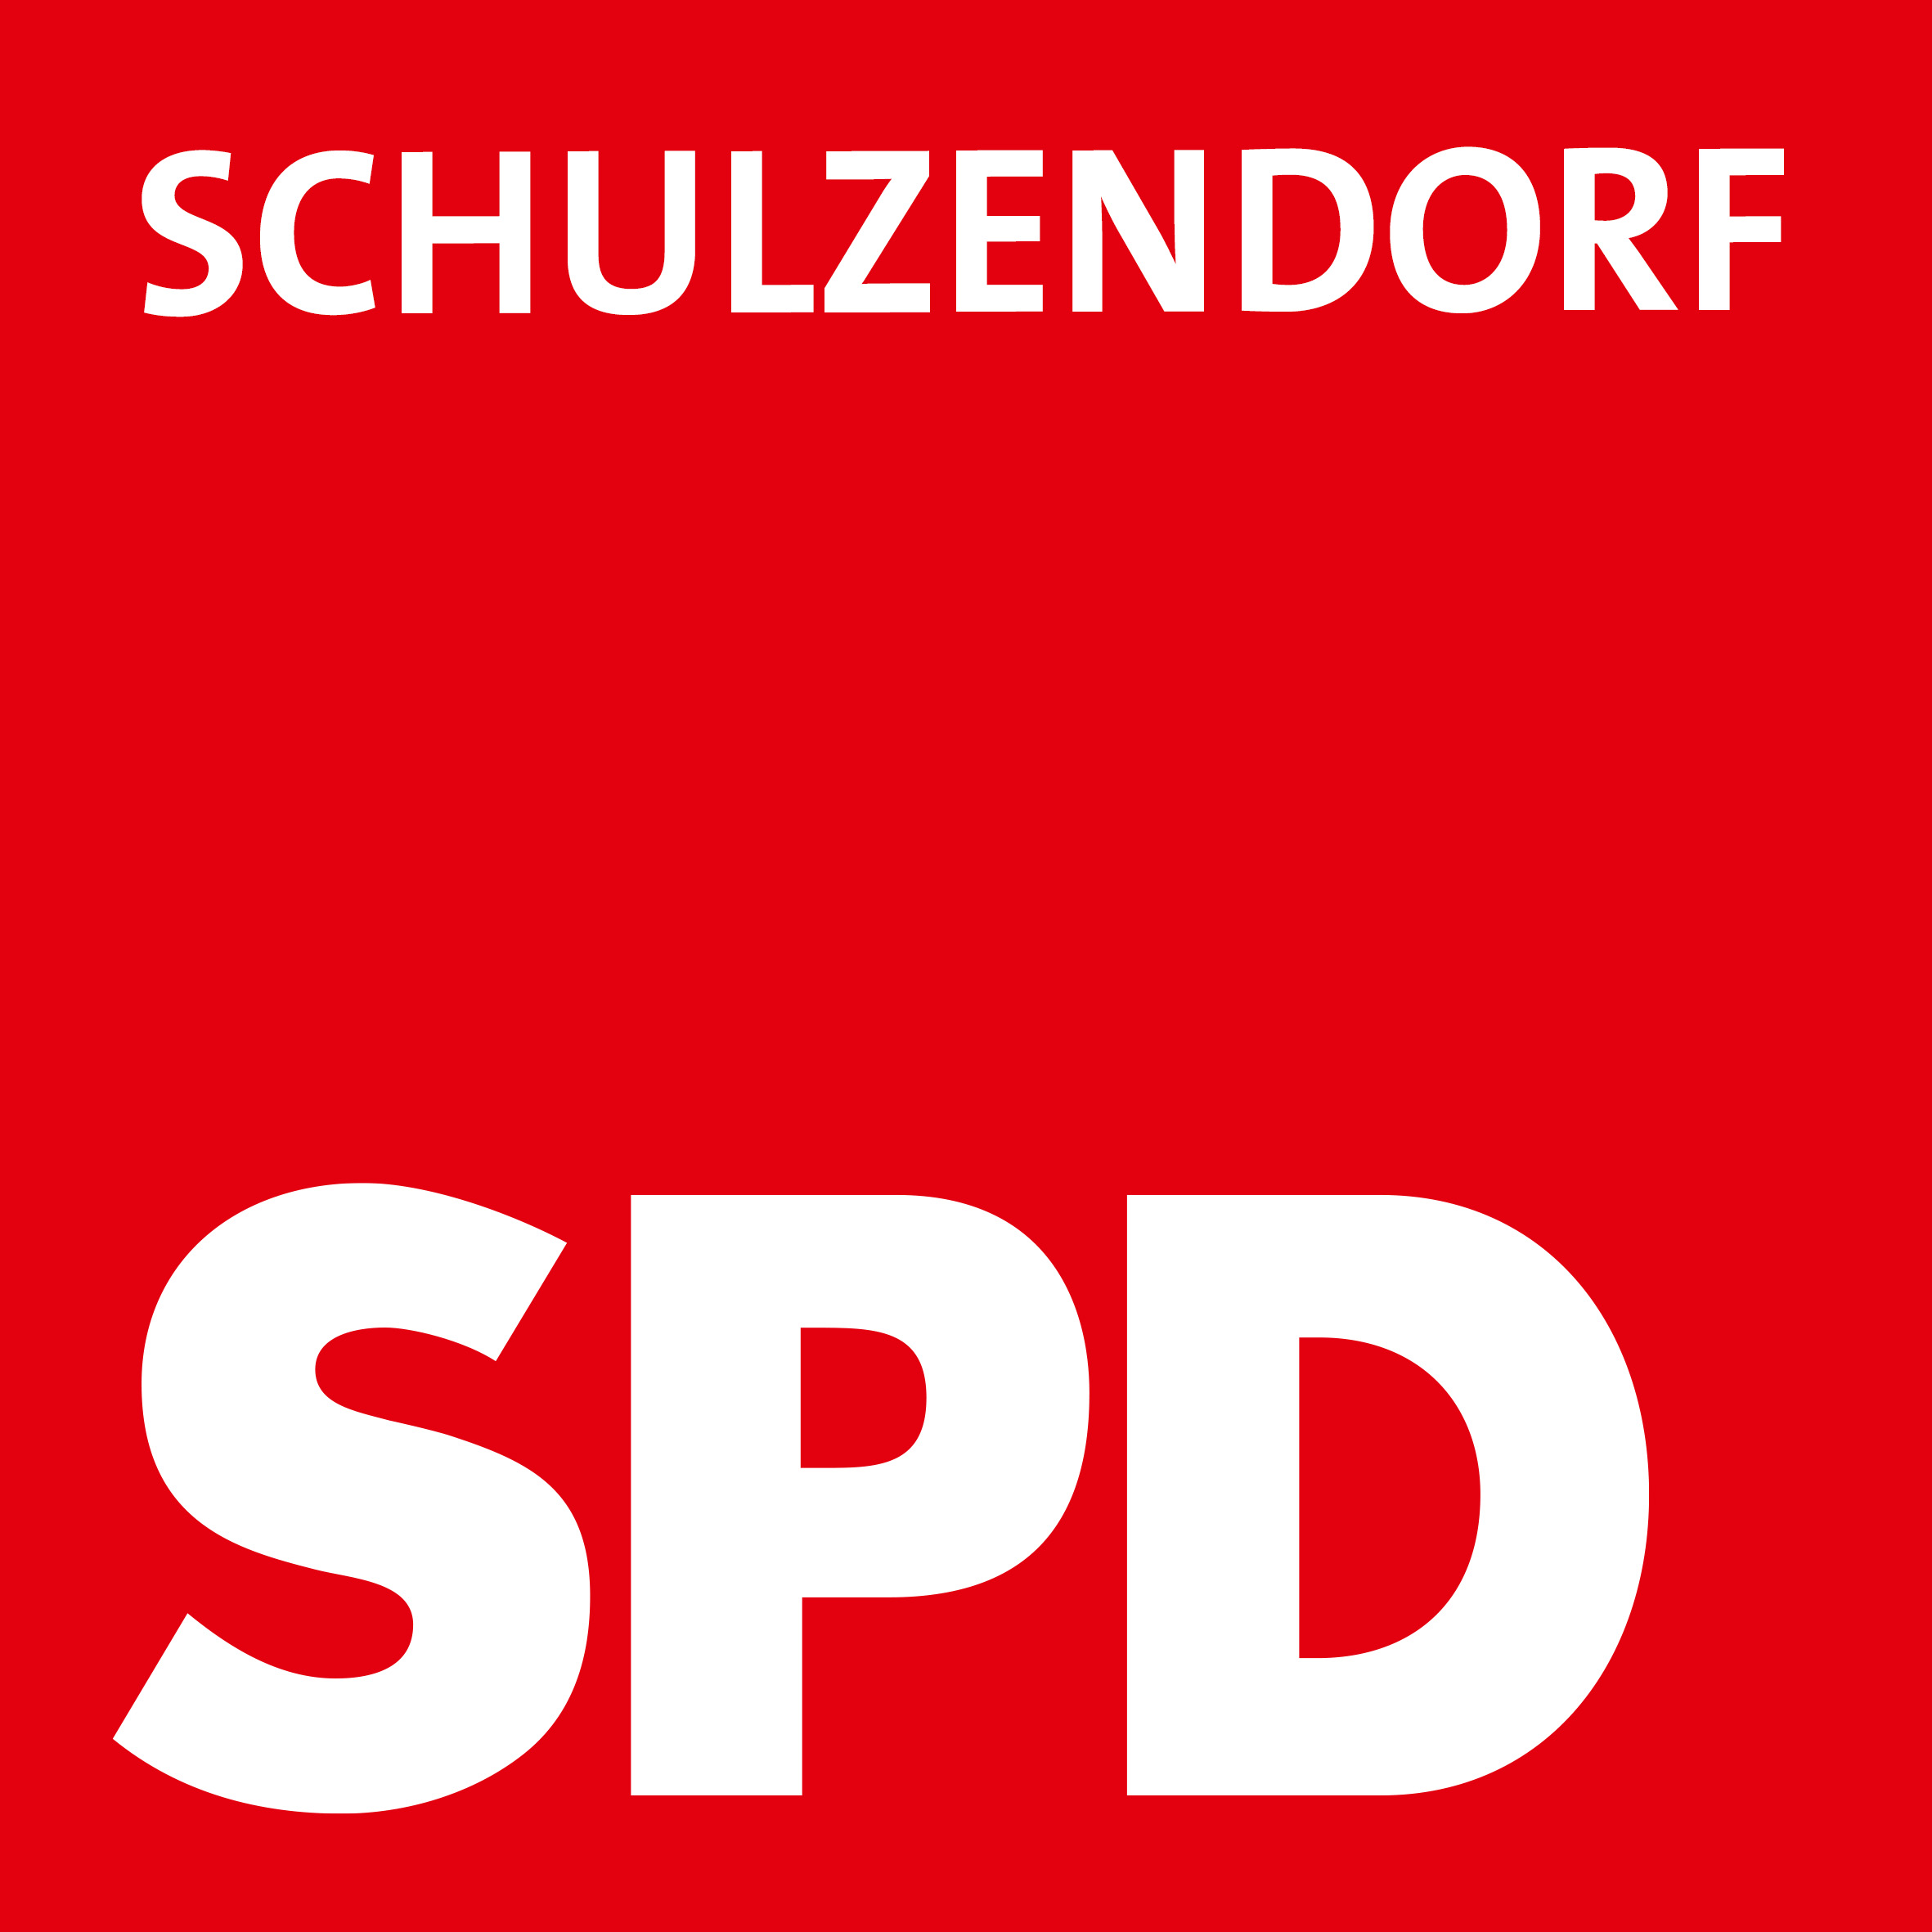 SPD Schulzendorf